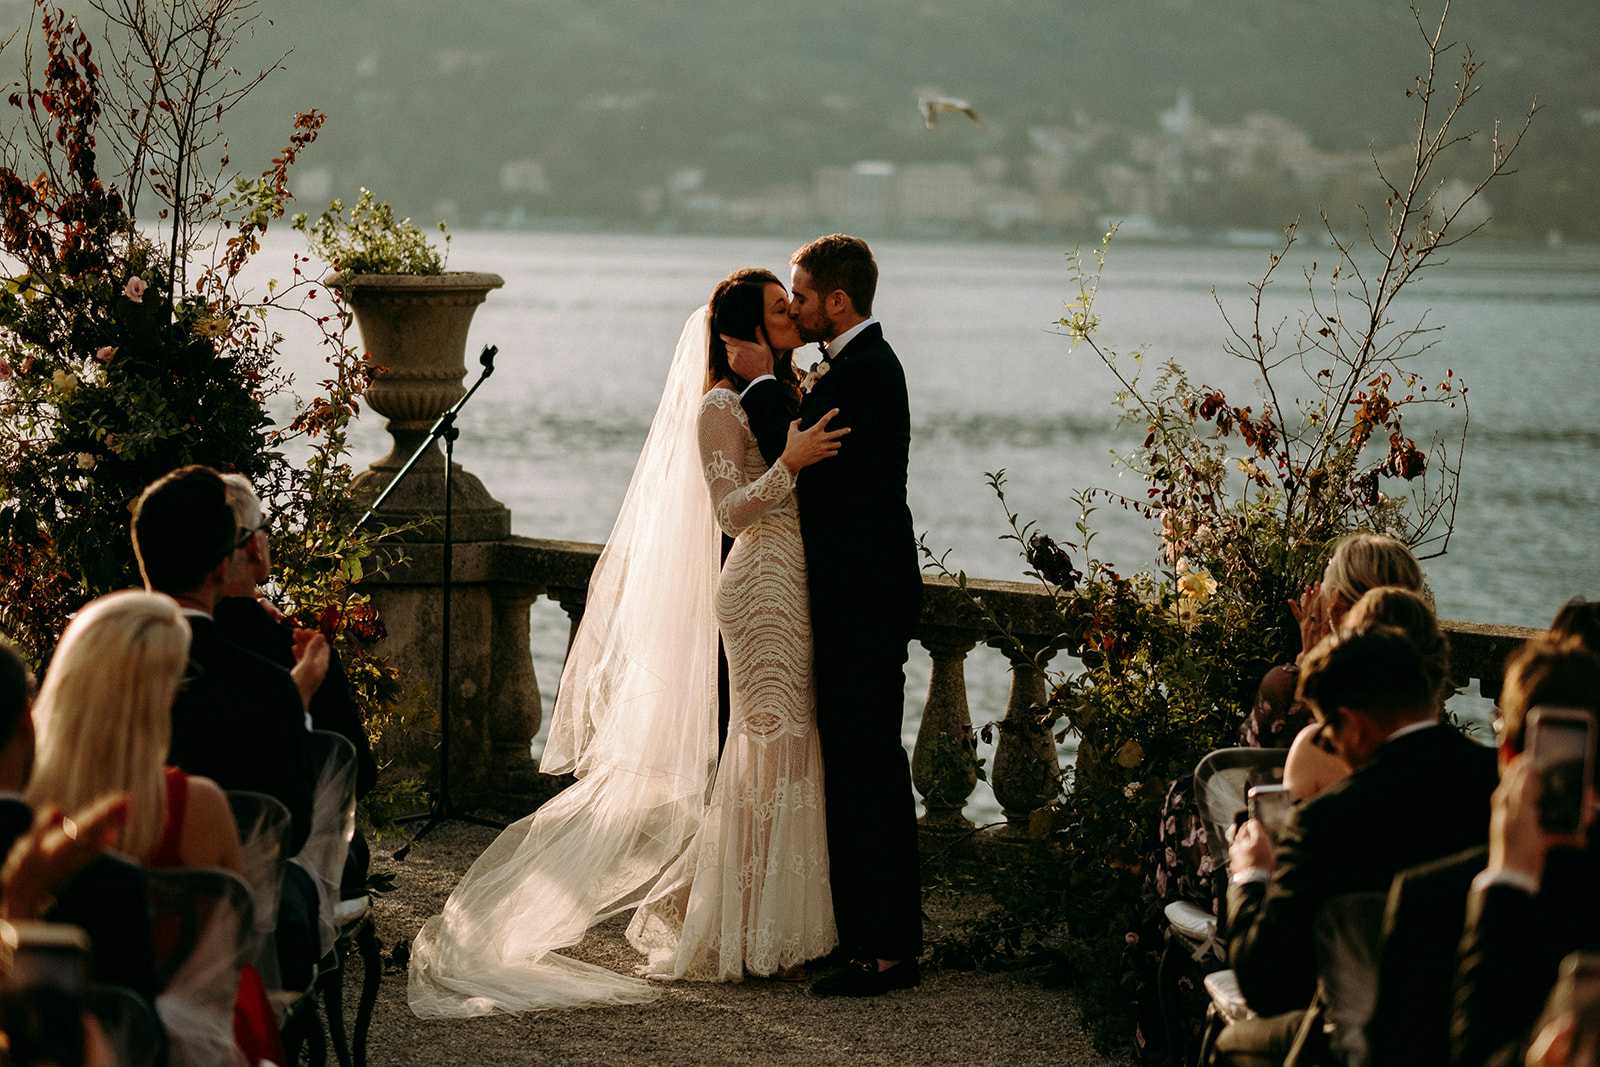 Jessica and Ryan’s wedding in Lake of Como, Villa Serbelloni.